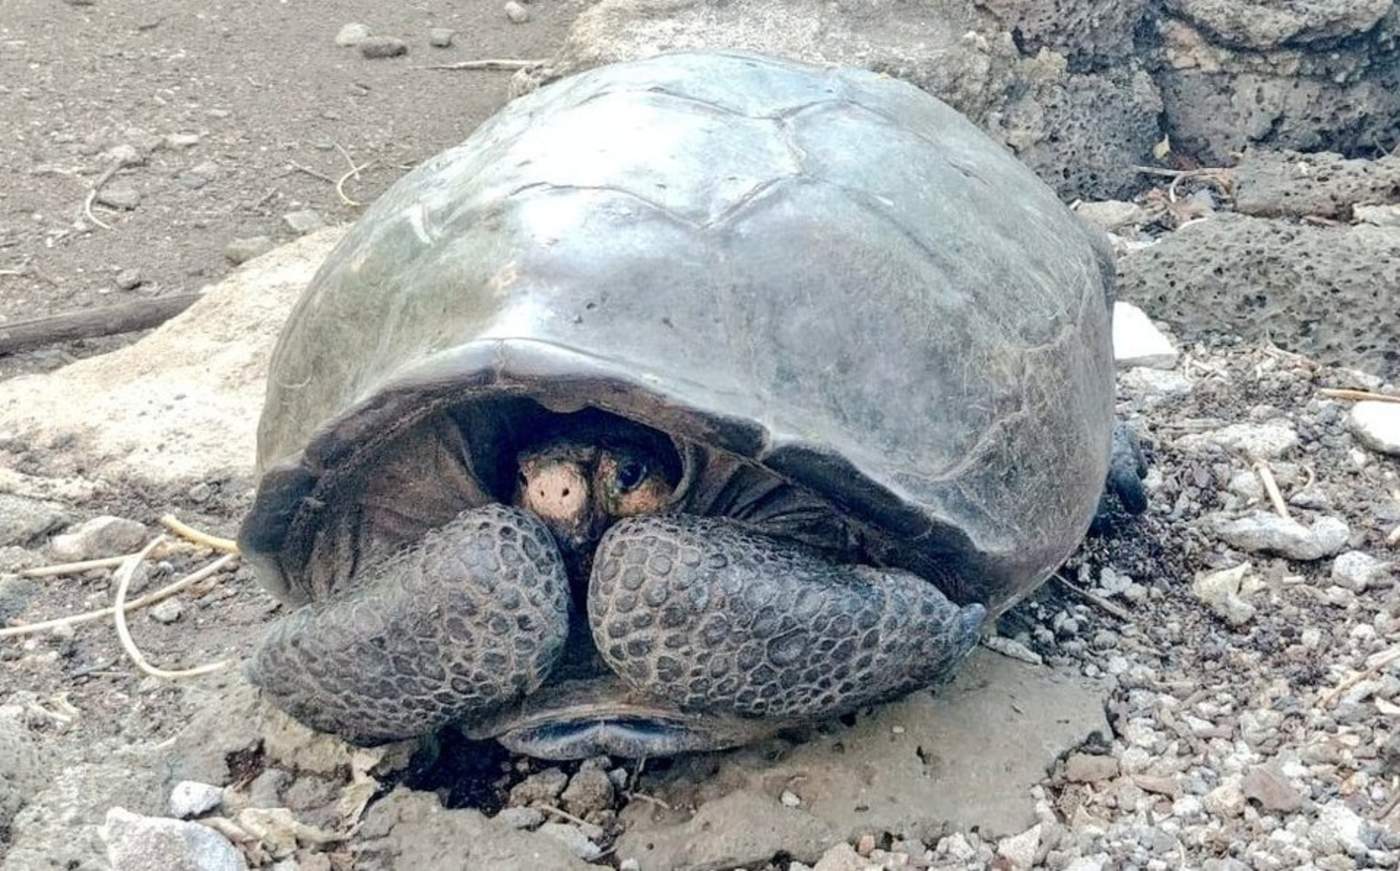 Encuentran una tortuga gigante que se creía extinta